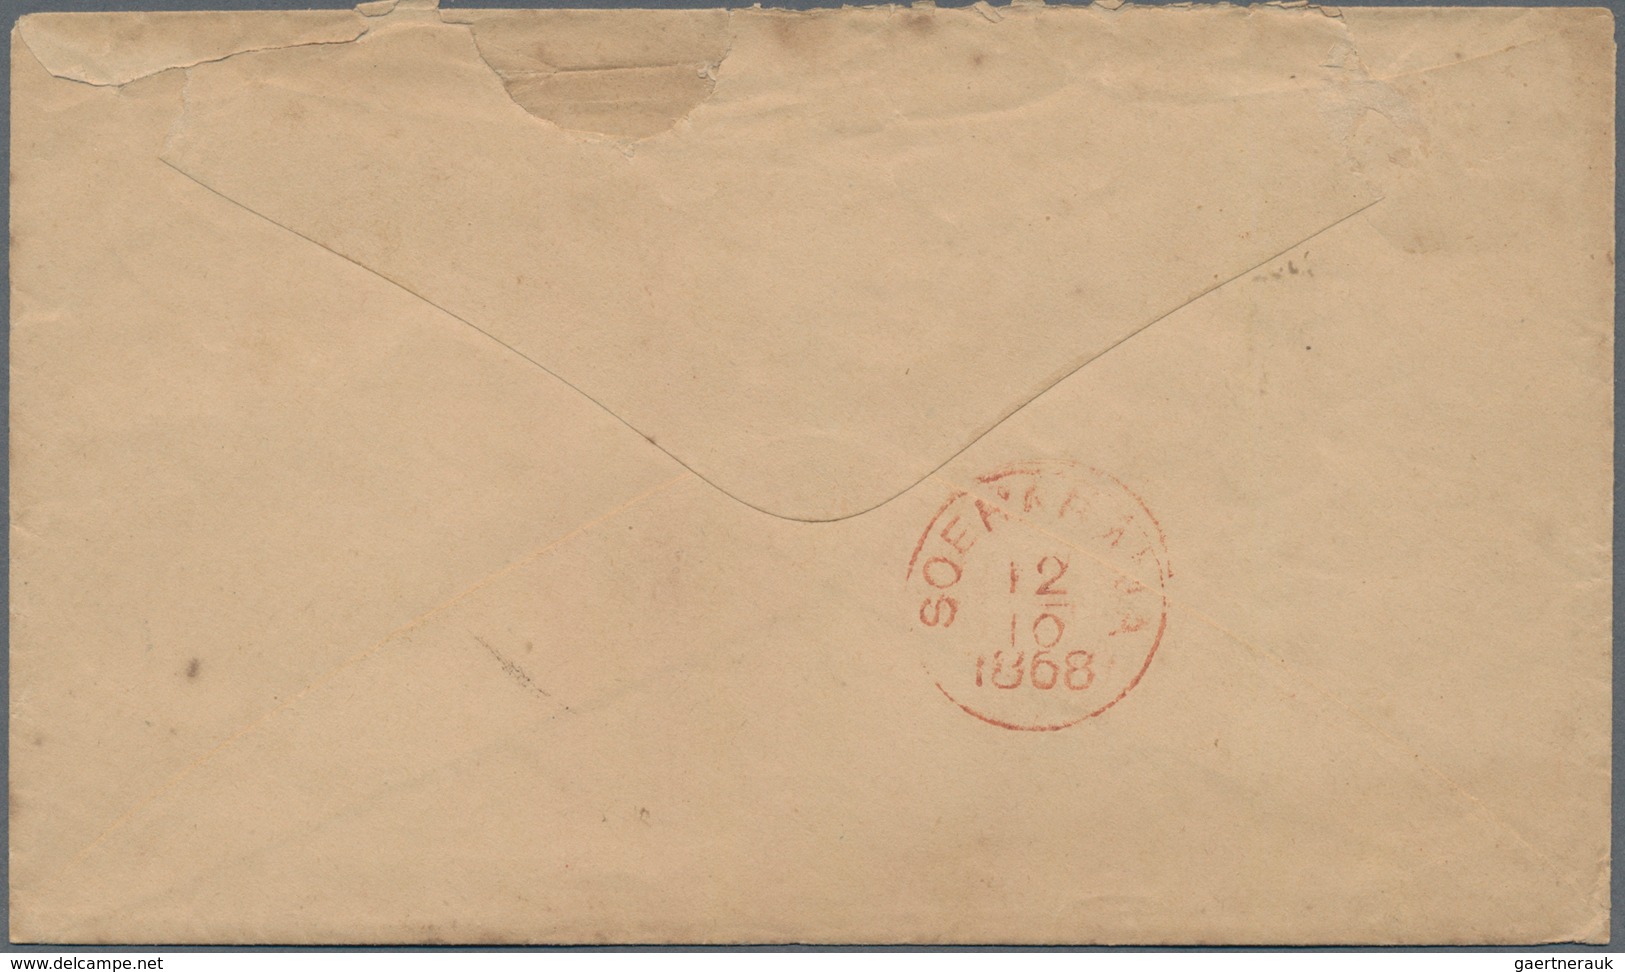 Niederländisch-Indien: 1868, "BATAVIA" Red Circle Postmark And Handwritten 10 C Cash Franked Note, B - Niederländisch-Indien